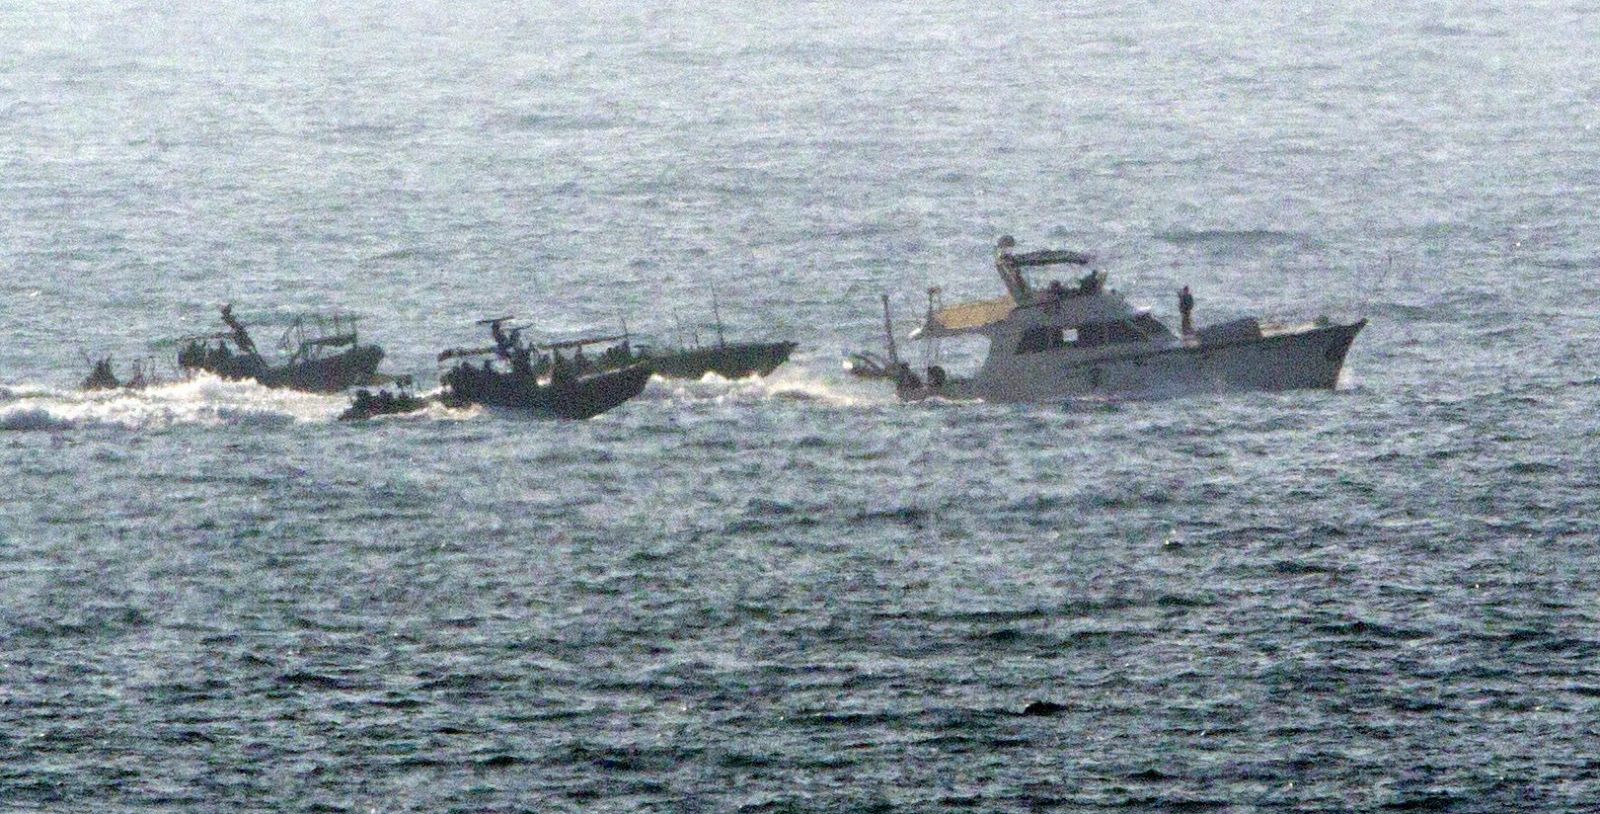 El barco francés de la Flotilla de la Libertad 'Dignité-Al Karama' es escoltado por dos barcos de la Marina israelí en su camino hasta el puerto militar de Ashdod, al sur de Israel.